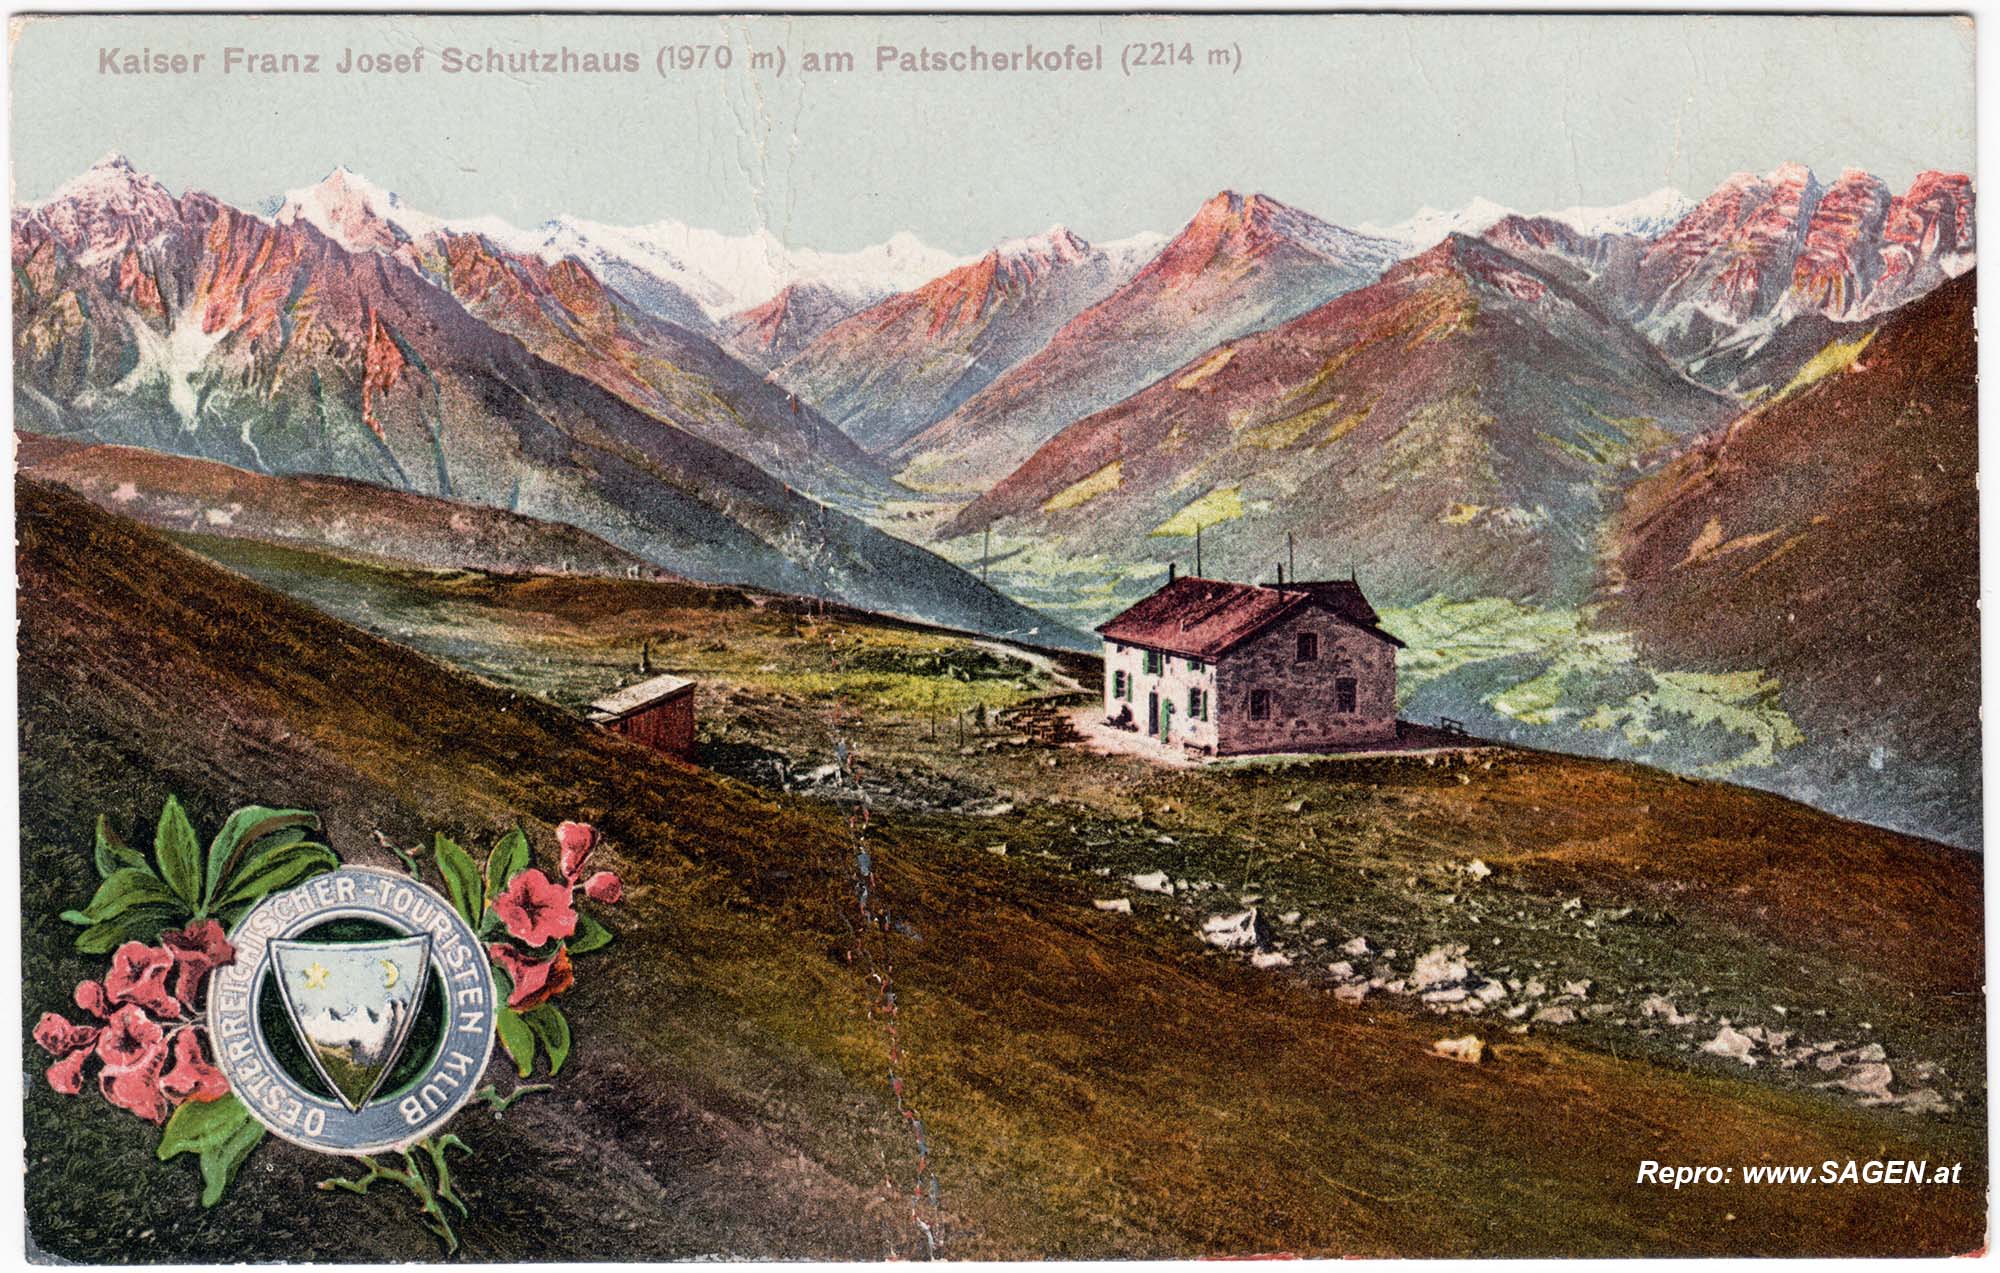 Kaiser Franz Josef Schutzhaus am Patscherkofel